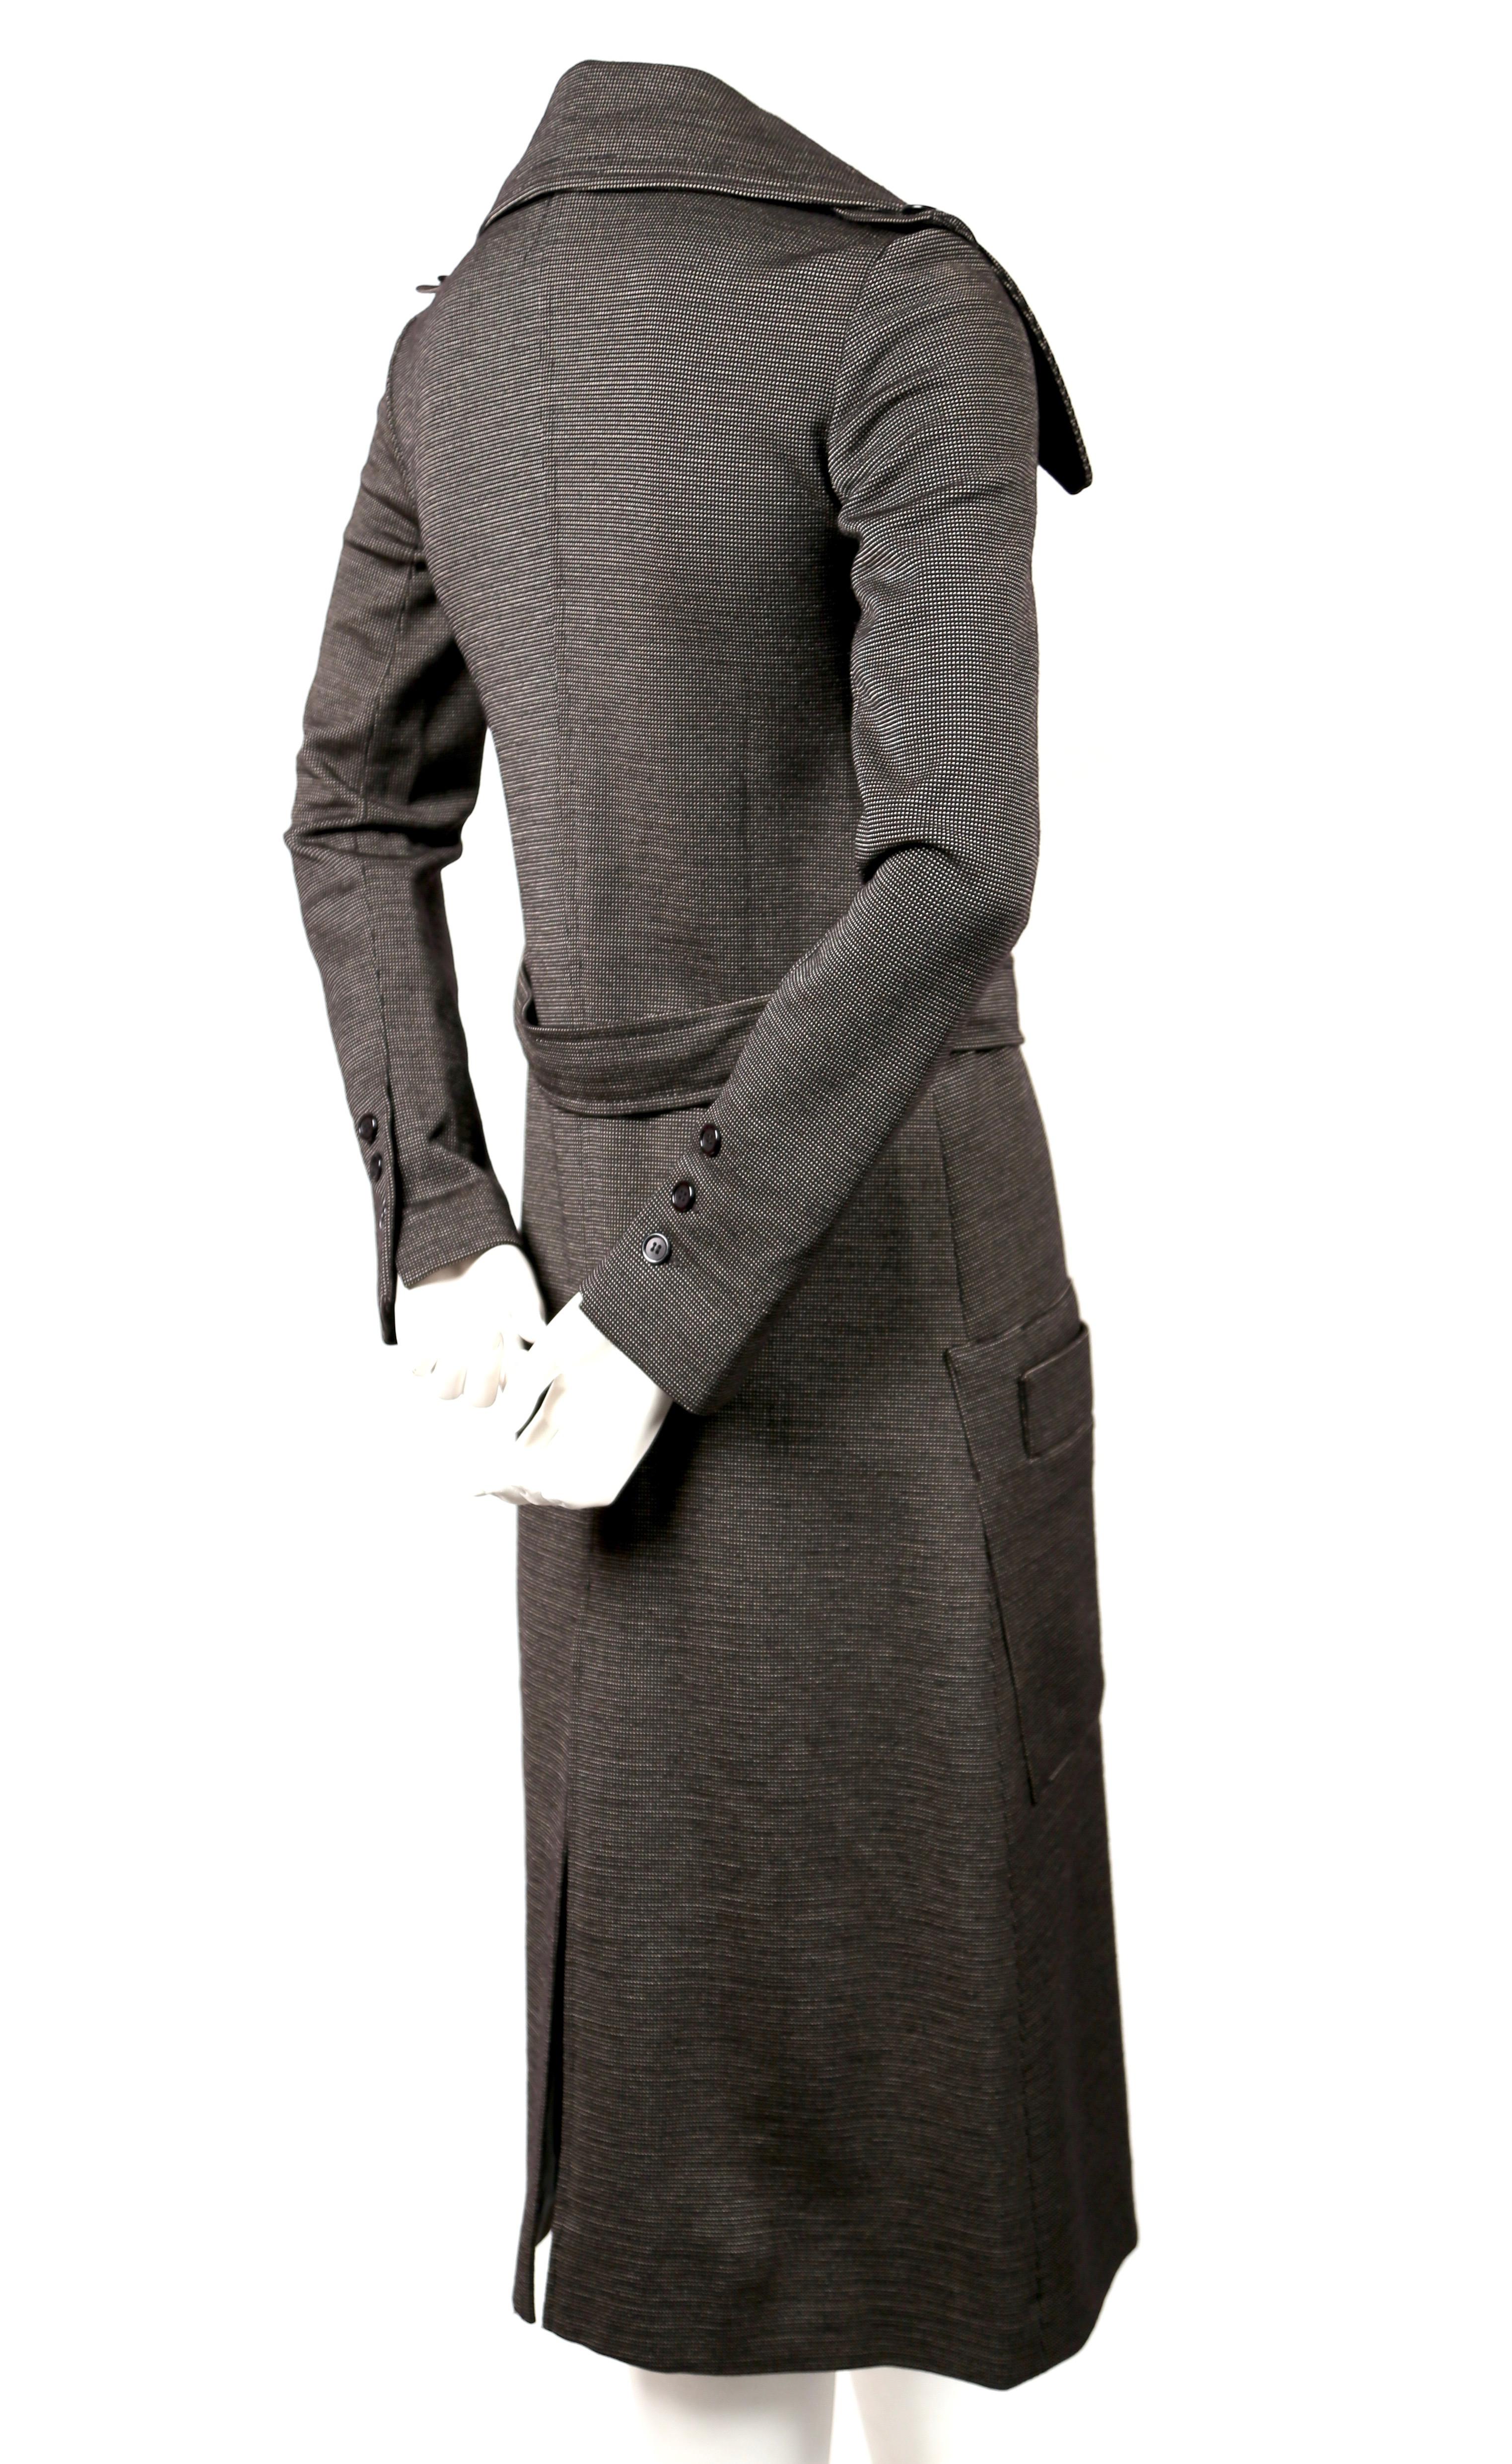 Sehr seltener, taillierter Trenchcoat aus Wolljersey von Sonia Rykiel aus den 1970er Jahren. Trench passt am besten einer US 2 bis zu einer sehr schmalen 4, da die Arme sehr lang und schmal sind. Ungefähre Maße: Schulter 14